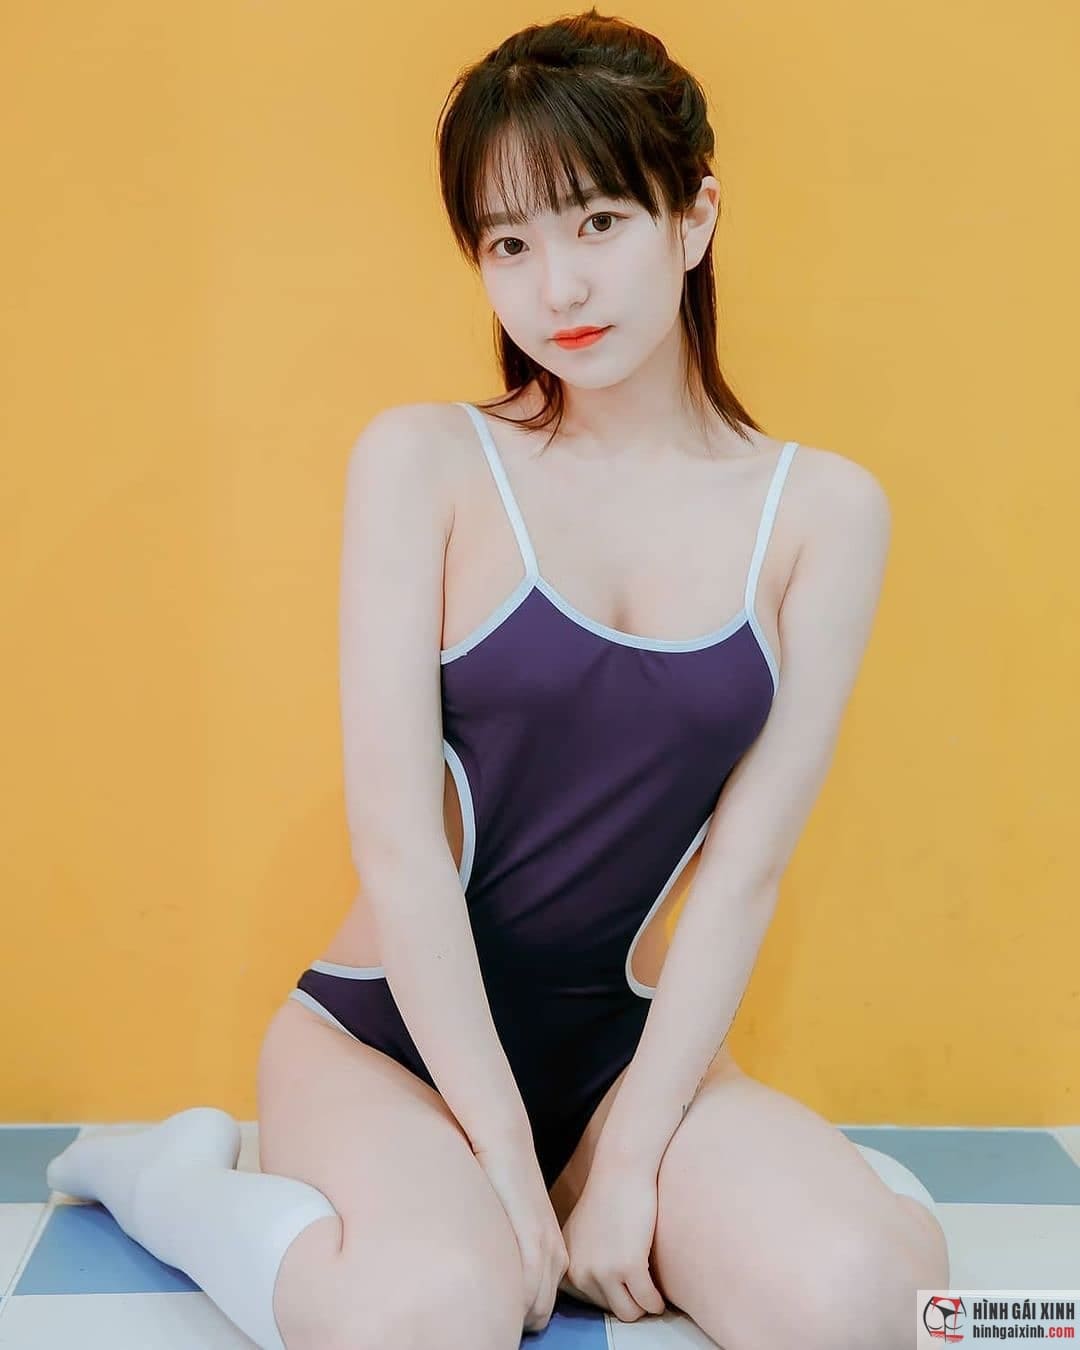 Hinh hình ảnh gái Hàn sexy đặc biệt hấp dẫn